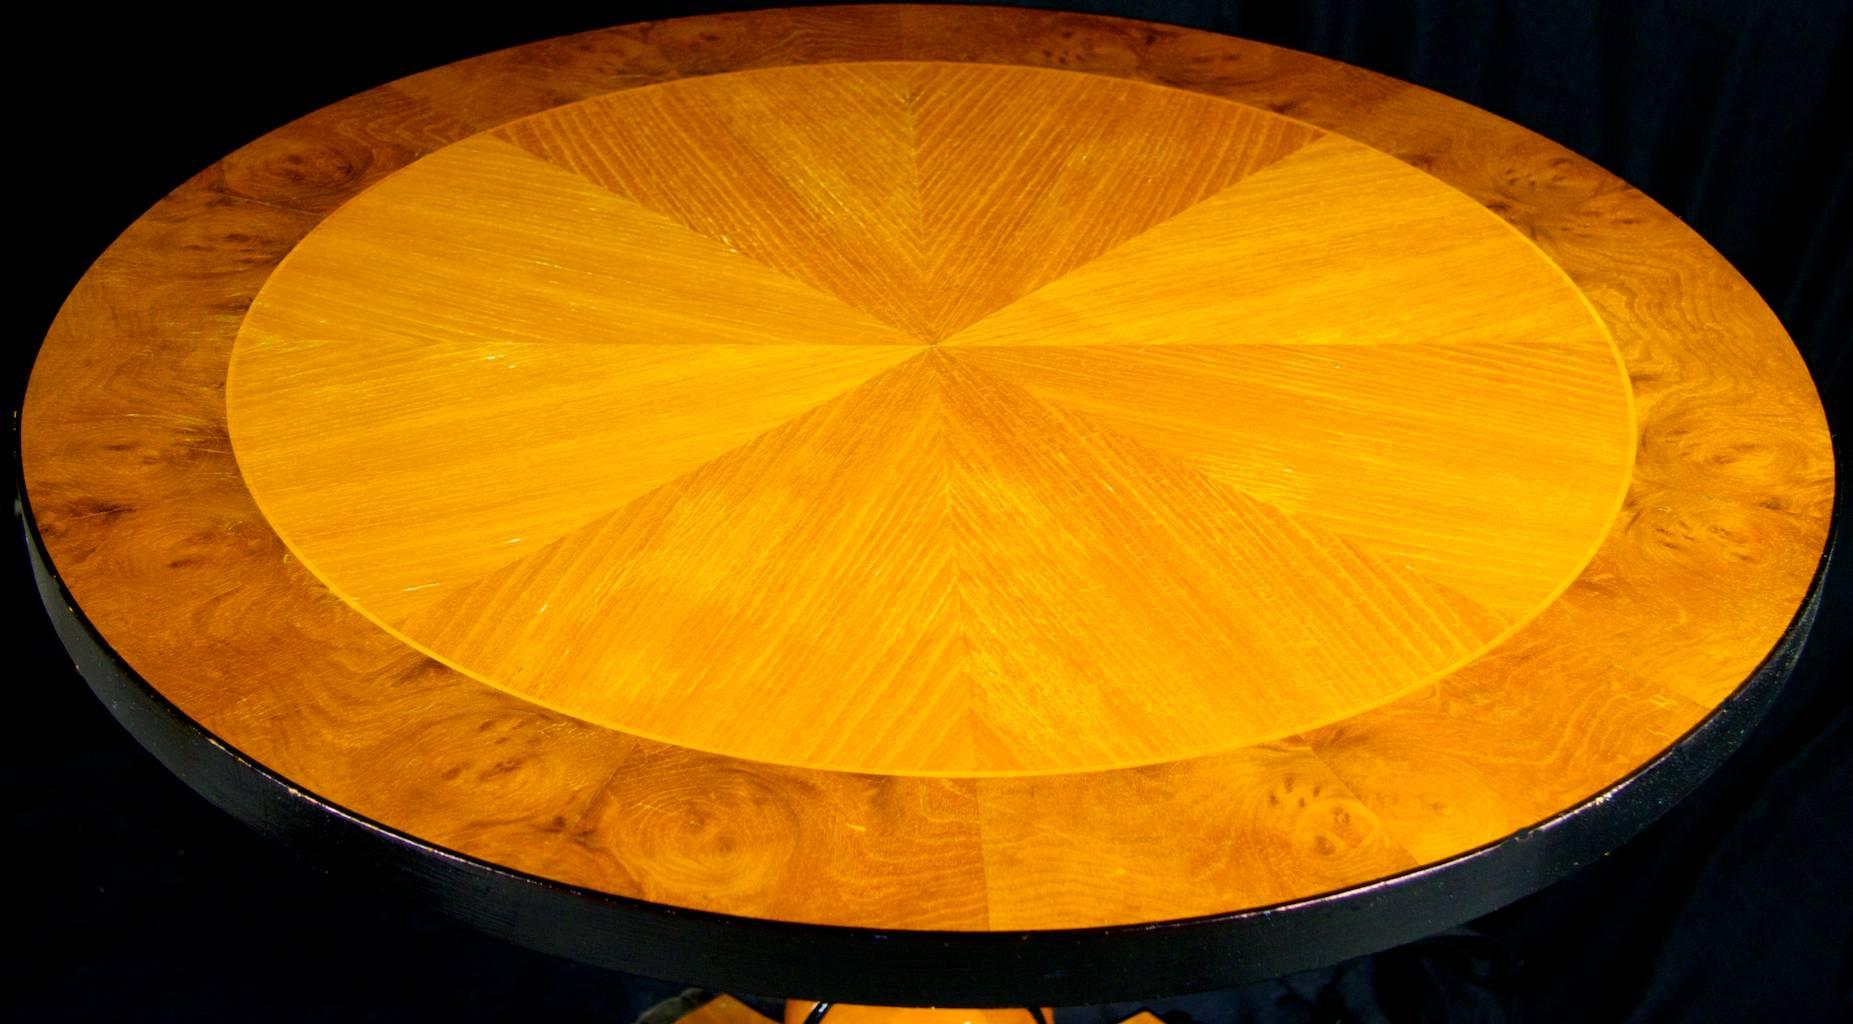 Atemberaubender schwedischer Biedermeier-Tisch mit erstklassigen goldenen Birkenflammenfurnieren in einem eingelegten 8. Furniermuster mit Ormolu-Details an der Kante, dem Sockel, den Füßen und der Basis, die in der begehrten honigfarbenen goldenen